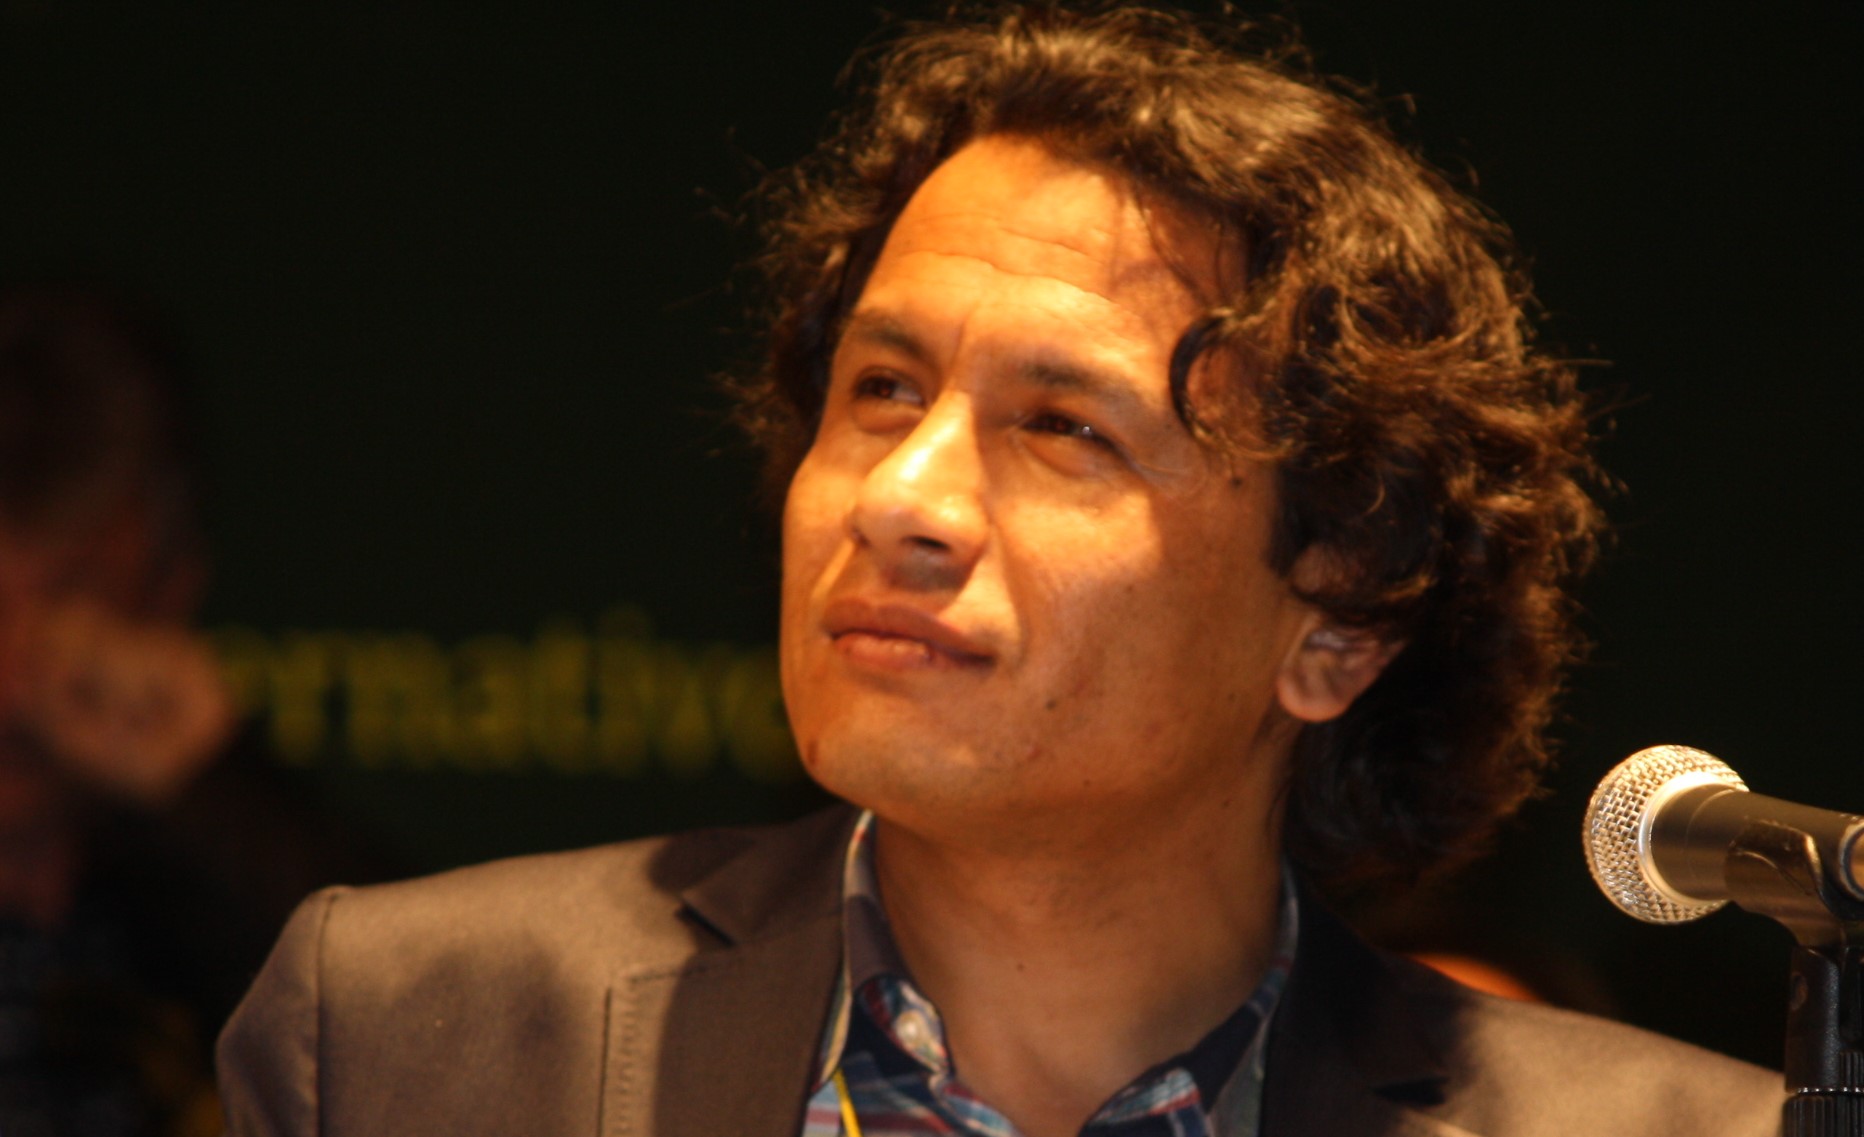 Kamran Mir Hazar is a Hazara poet, editor, activist, and information system specialist from Hazaristan.